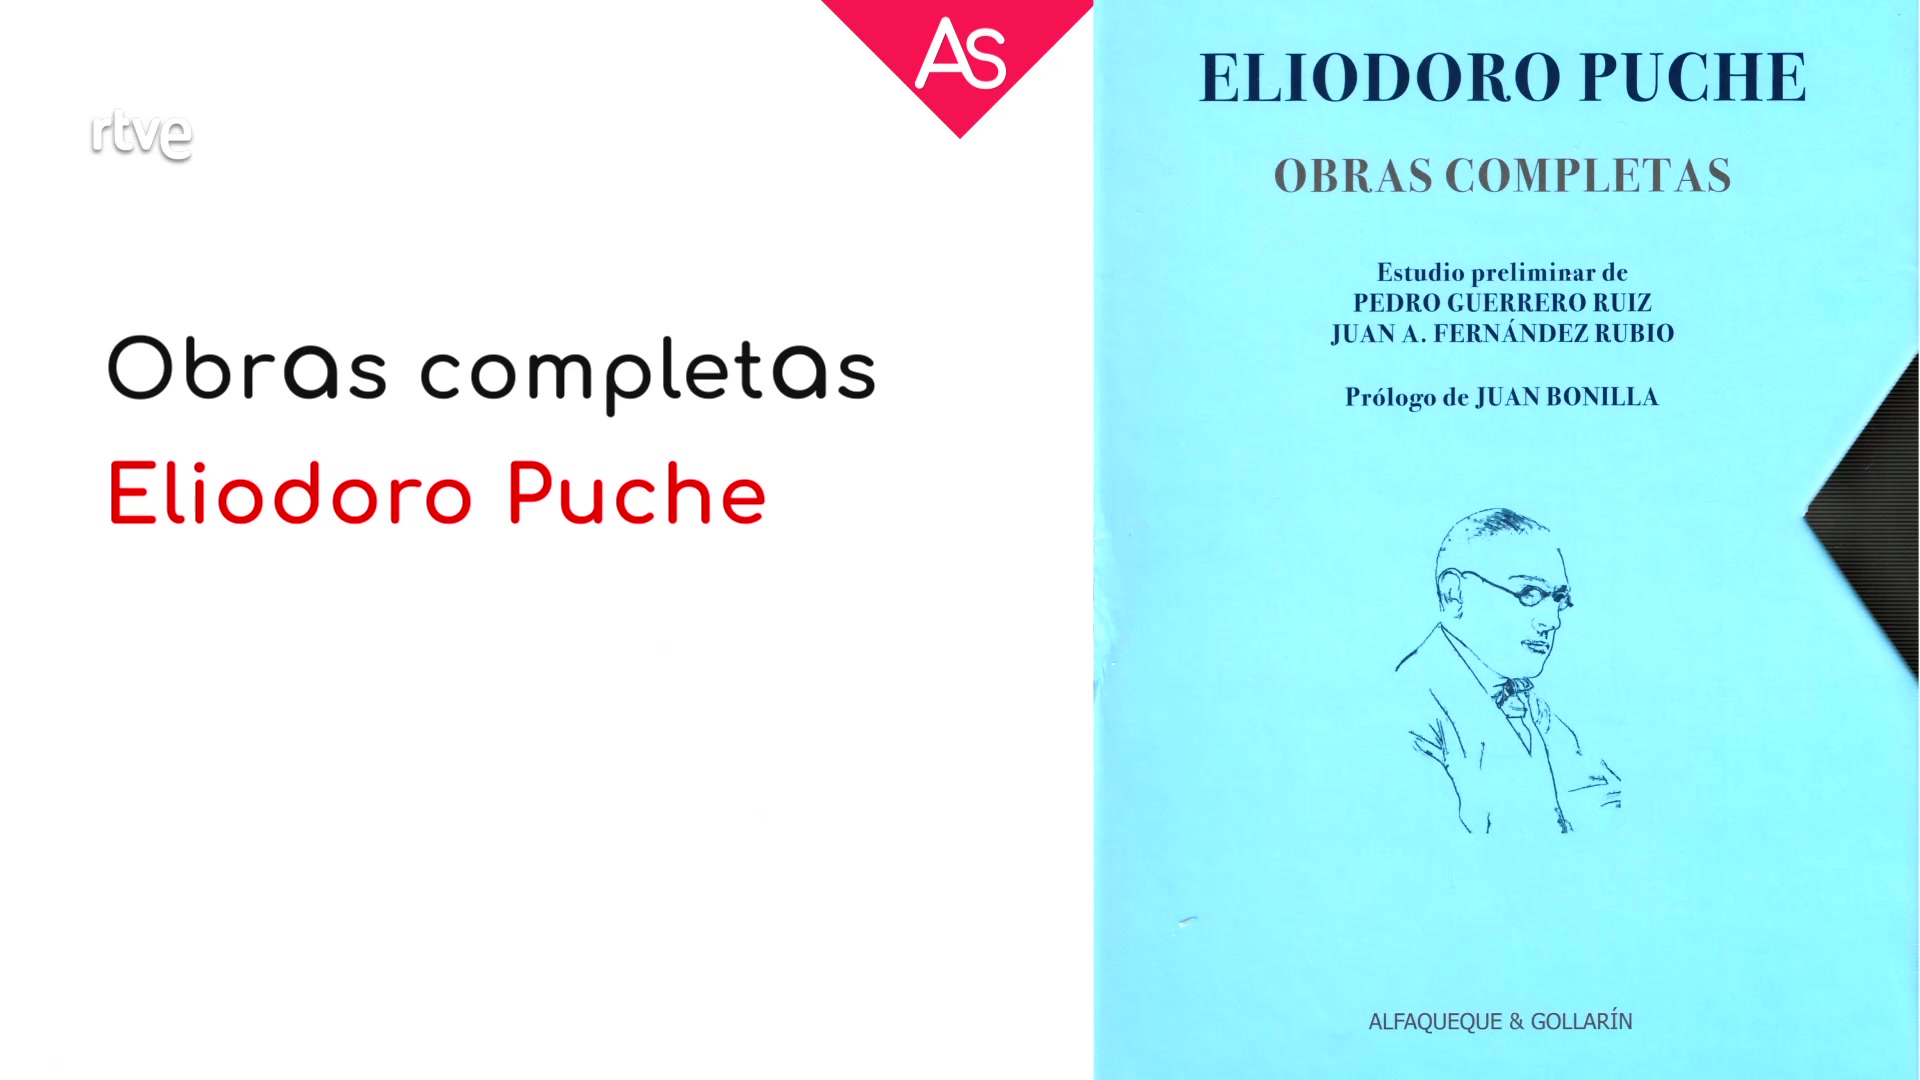 Ir al Video La aventura del saber - Reseñamos las obras completas del poeta Eliodoro Puche